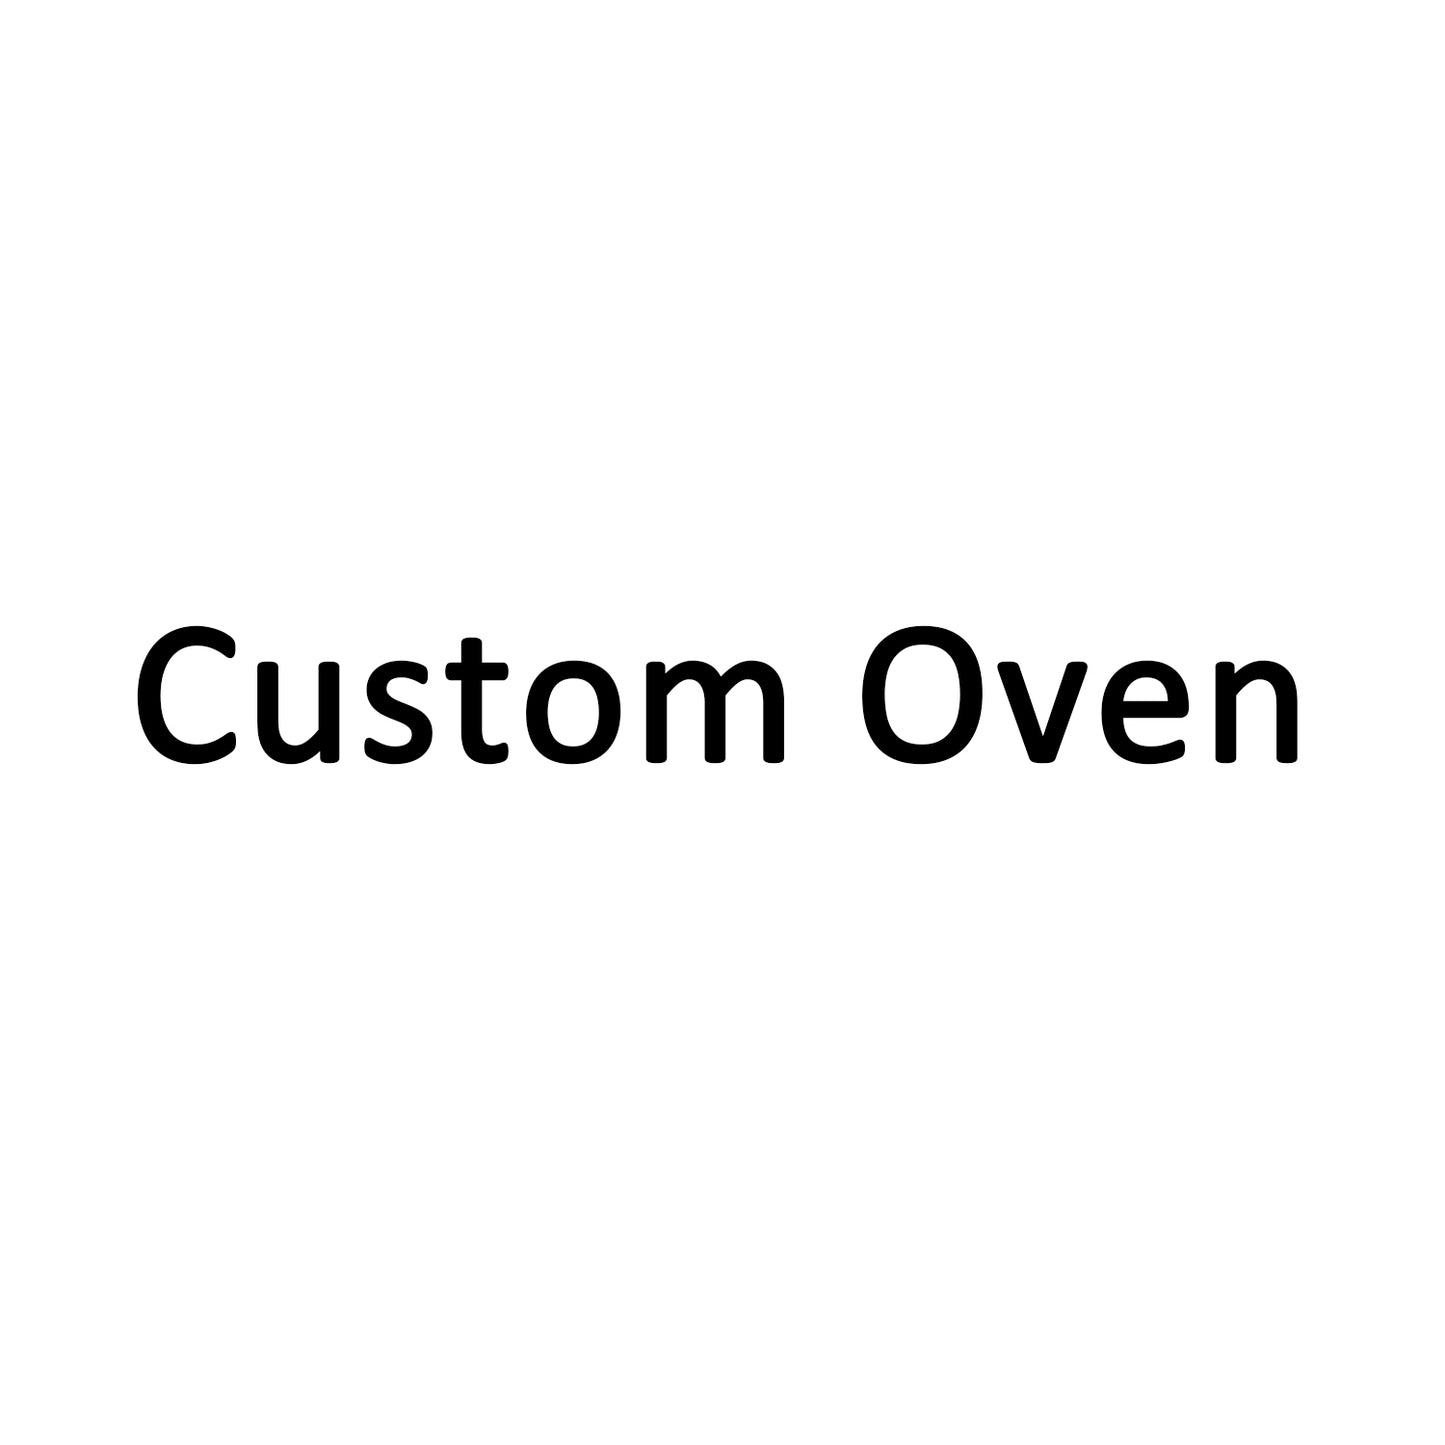 Need Custom Oven?